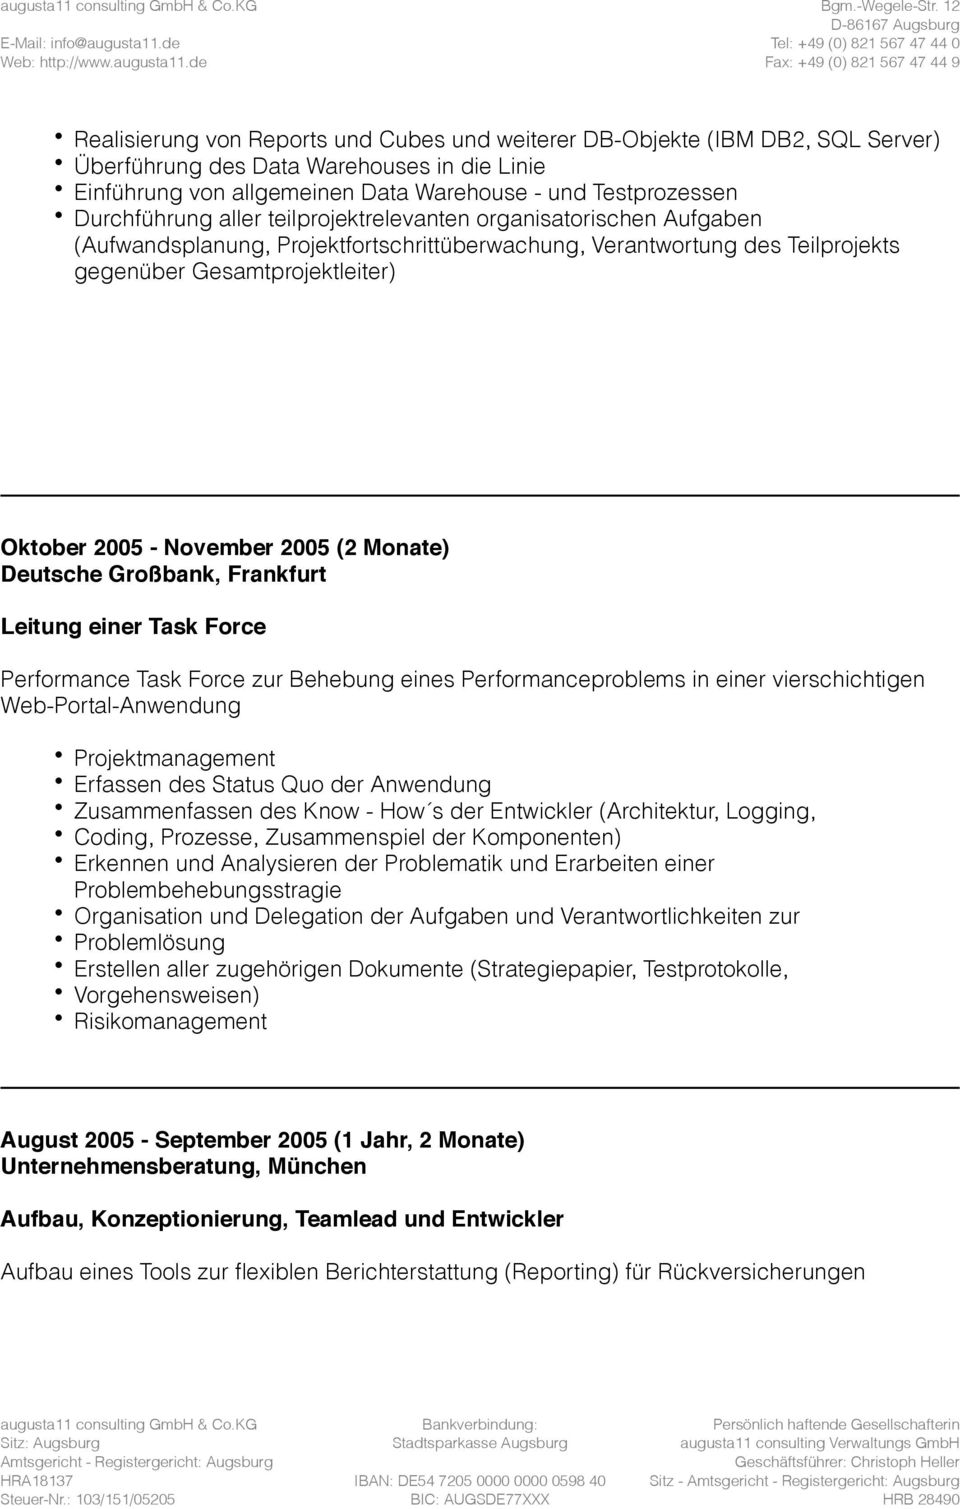 November 2005 (2 Monate) Deutsche Großbank, Frankfurt Leitung einer Task Force Performance Task Force zur Behebung eines Performanceproblems in einer vierschichtigen Web-Portal-Anwendung